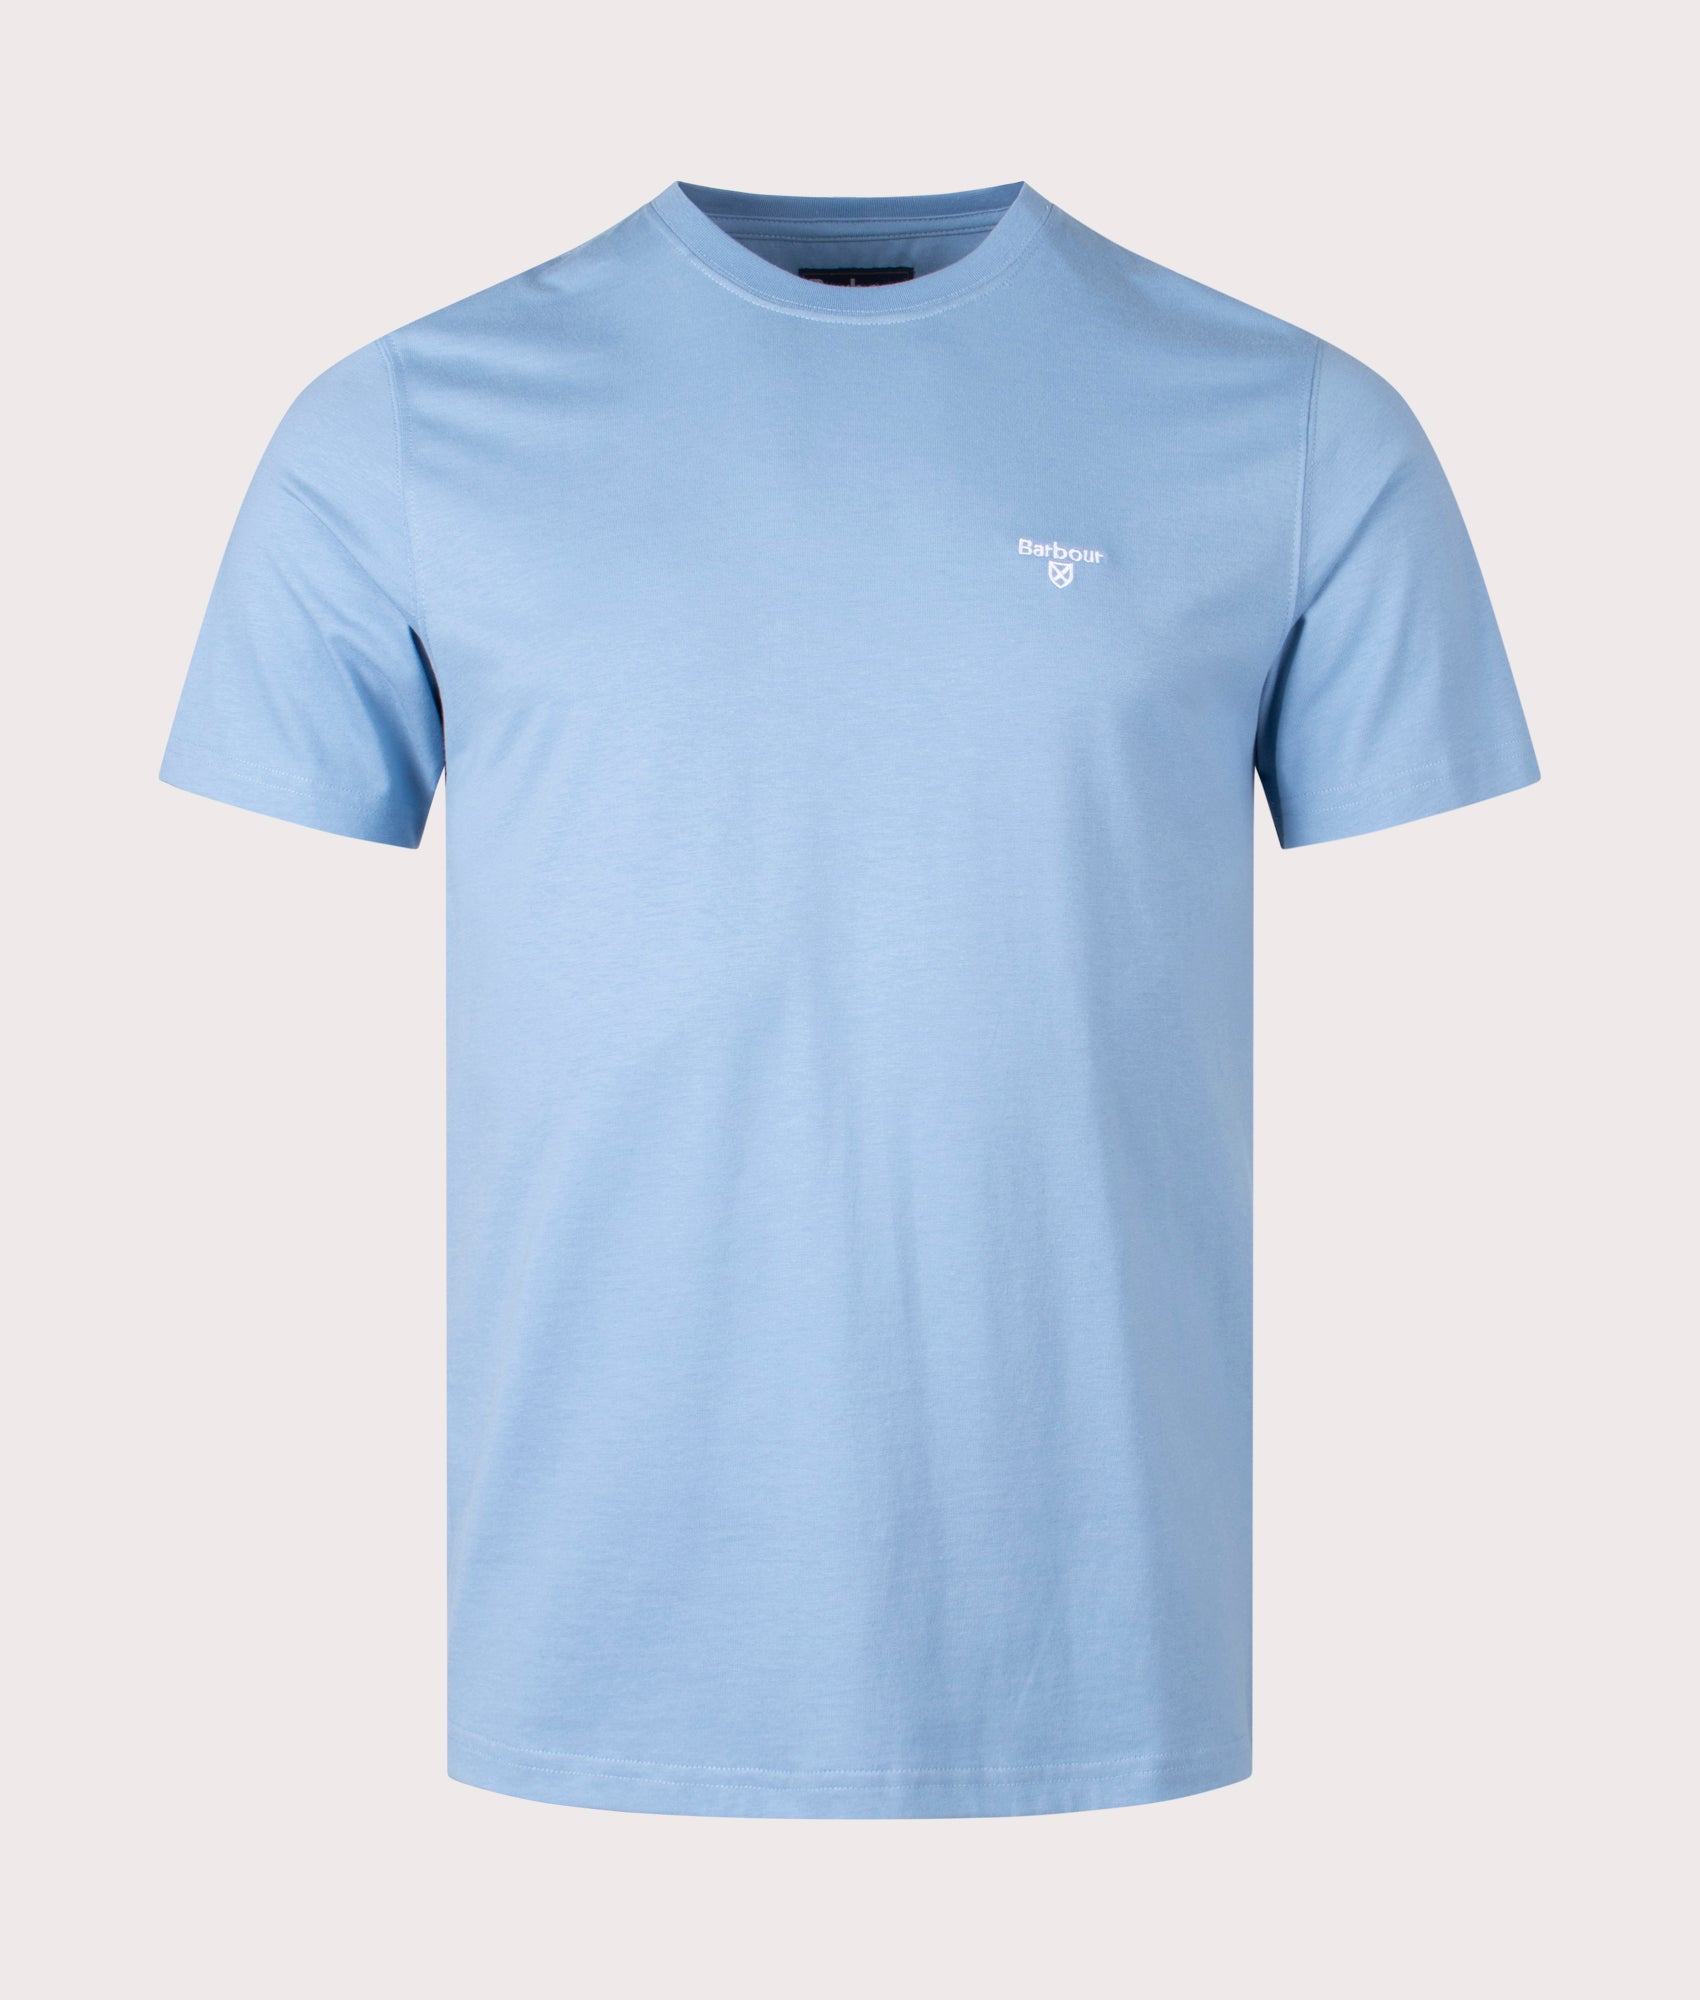 Barbour Lifestyle Mens Essential Sports T-Shirt - Colour: BL33 Blue - Size: XL